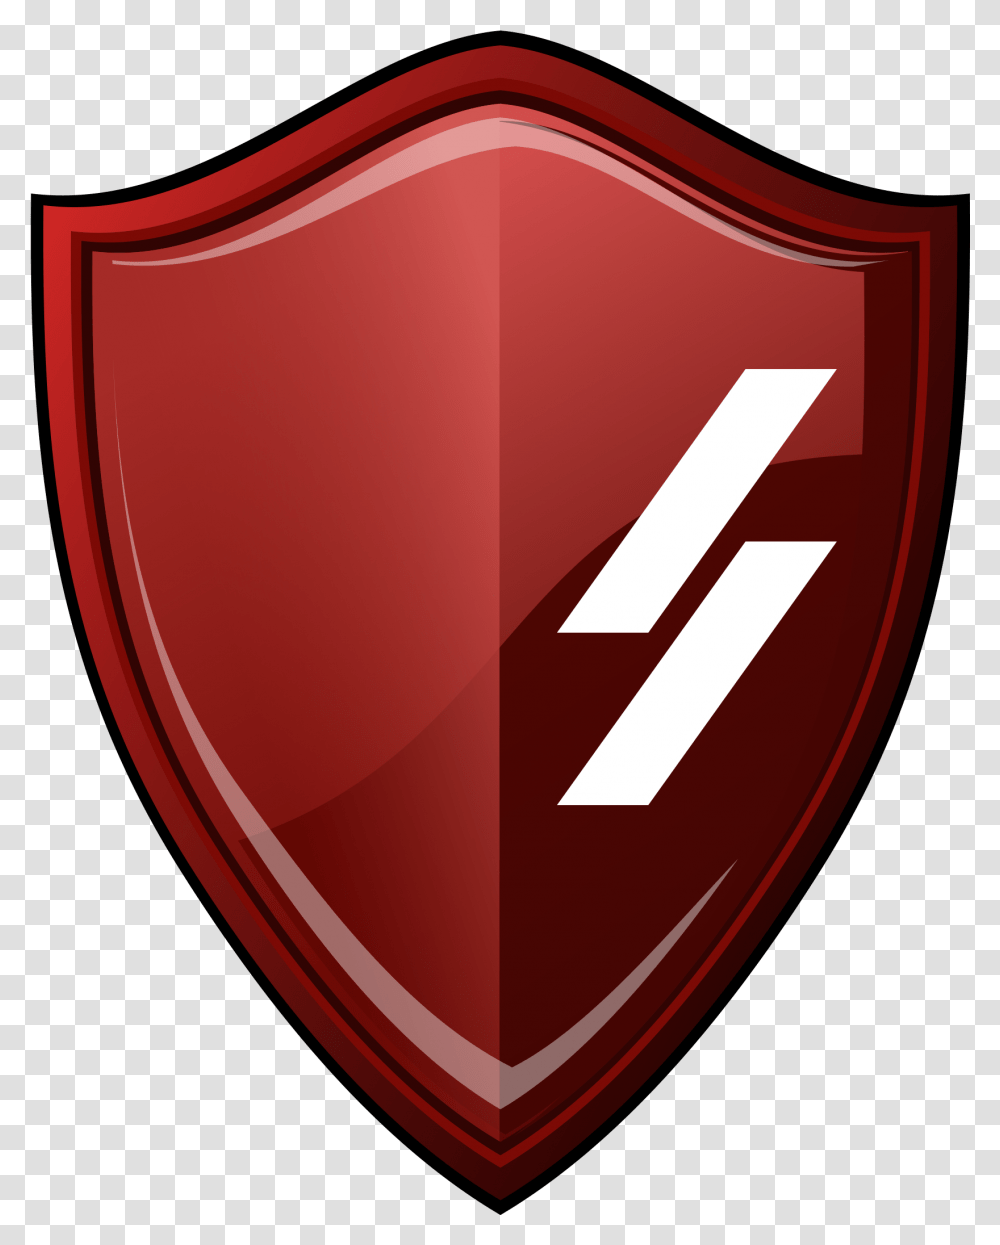 Versus Evil Gifs Find & Share On Giphy Versus Evil Logo, Shield, Armor Transparent Png